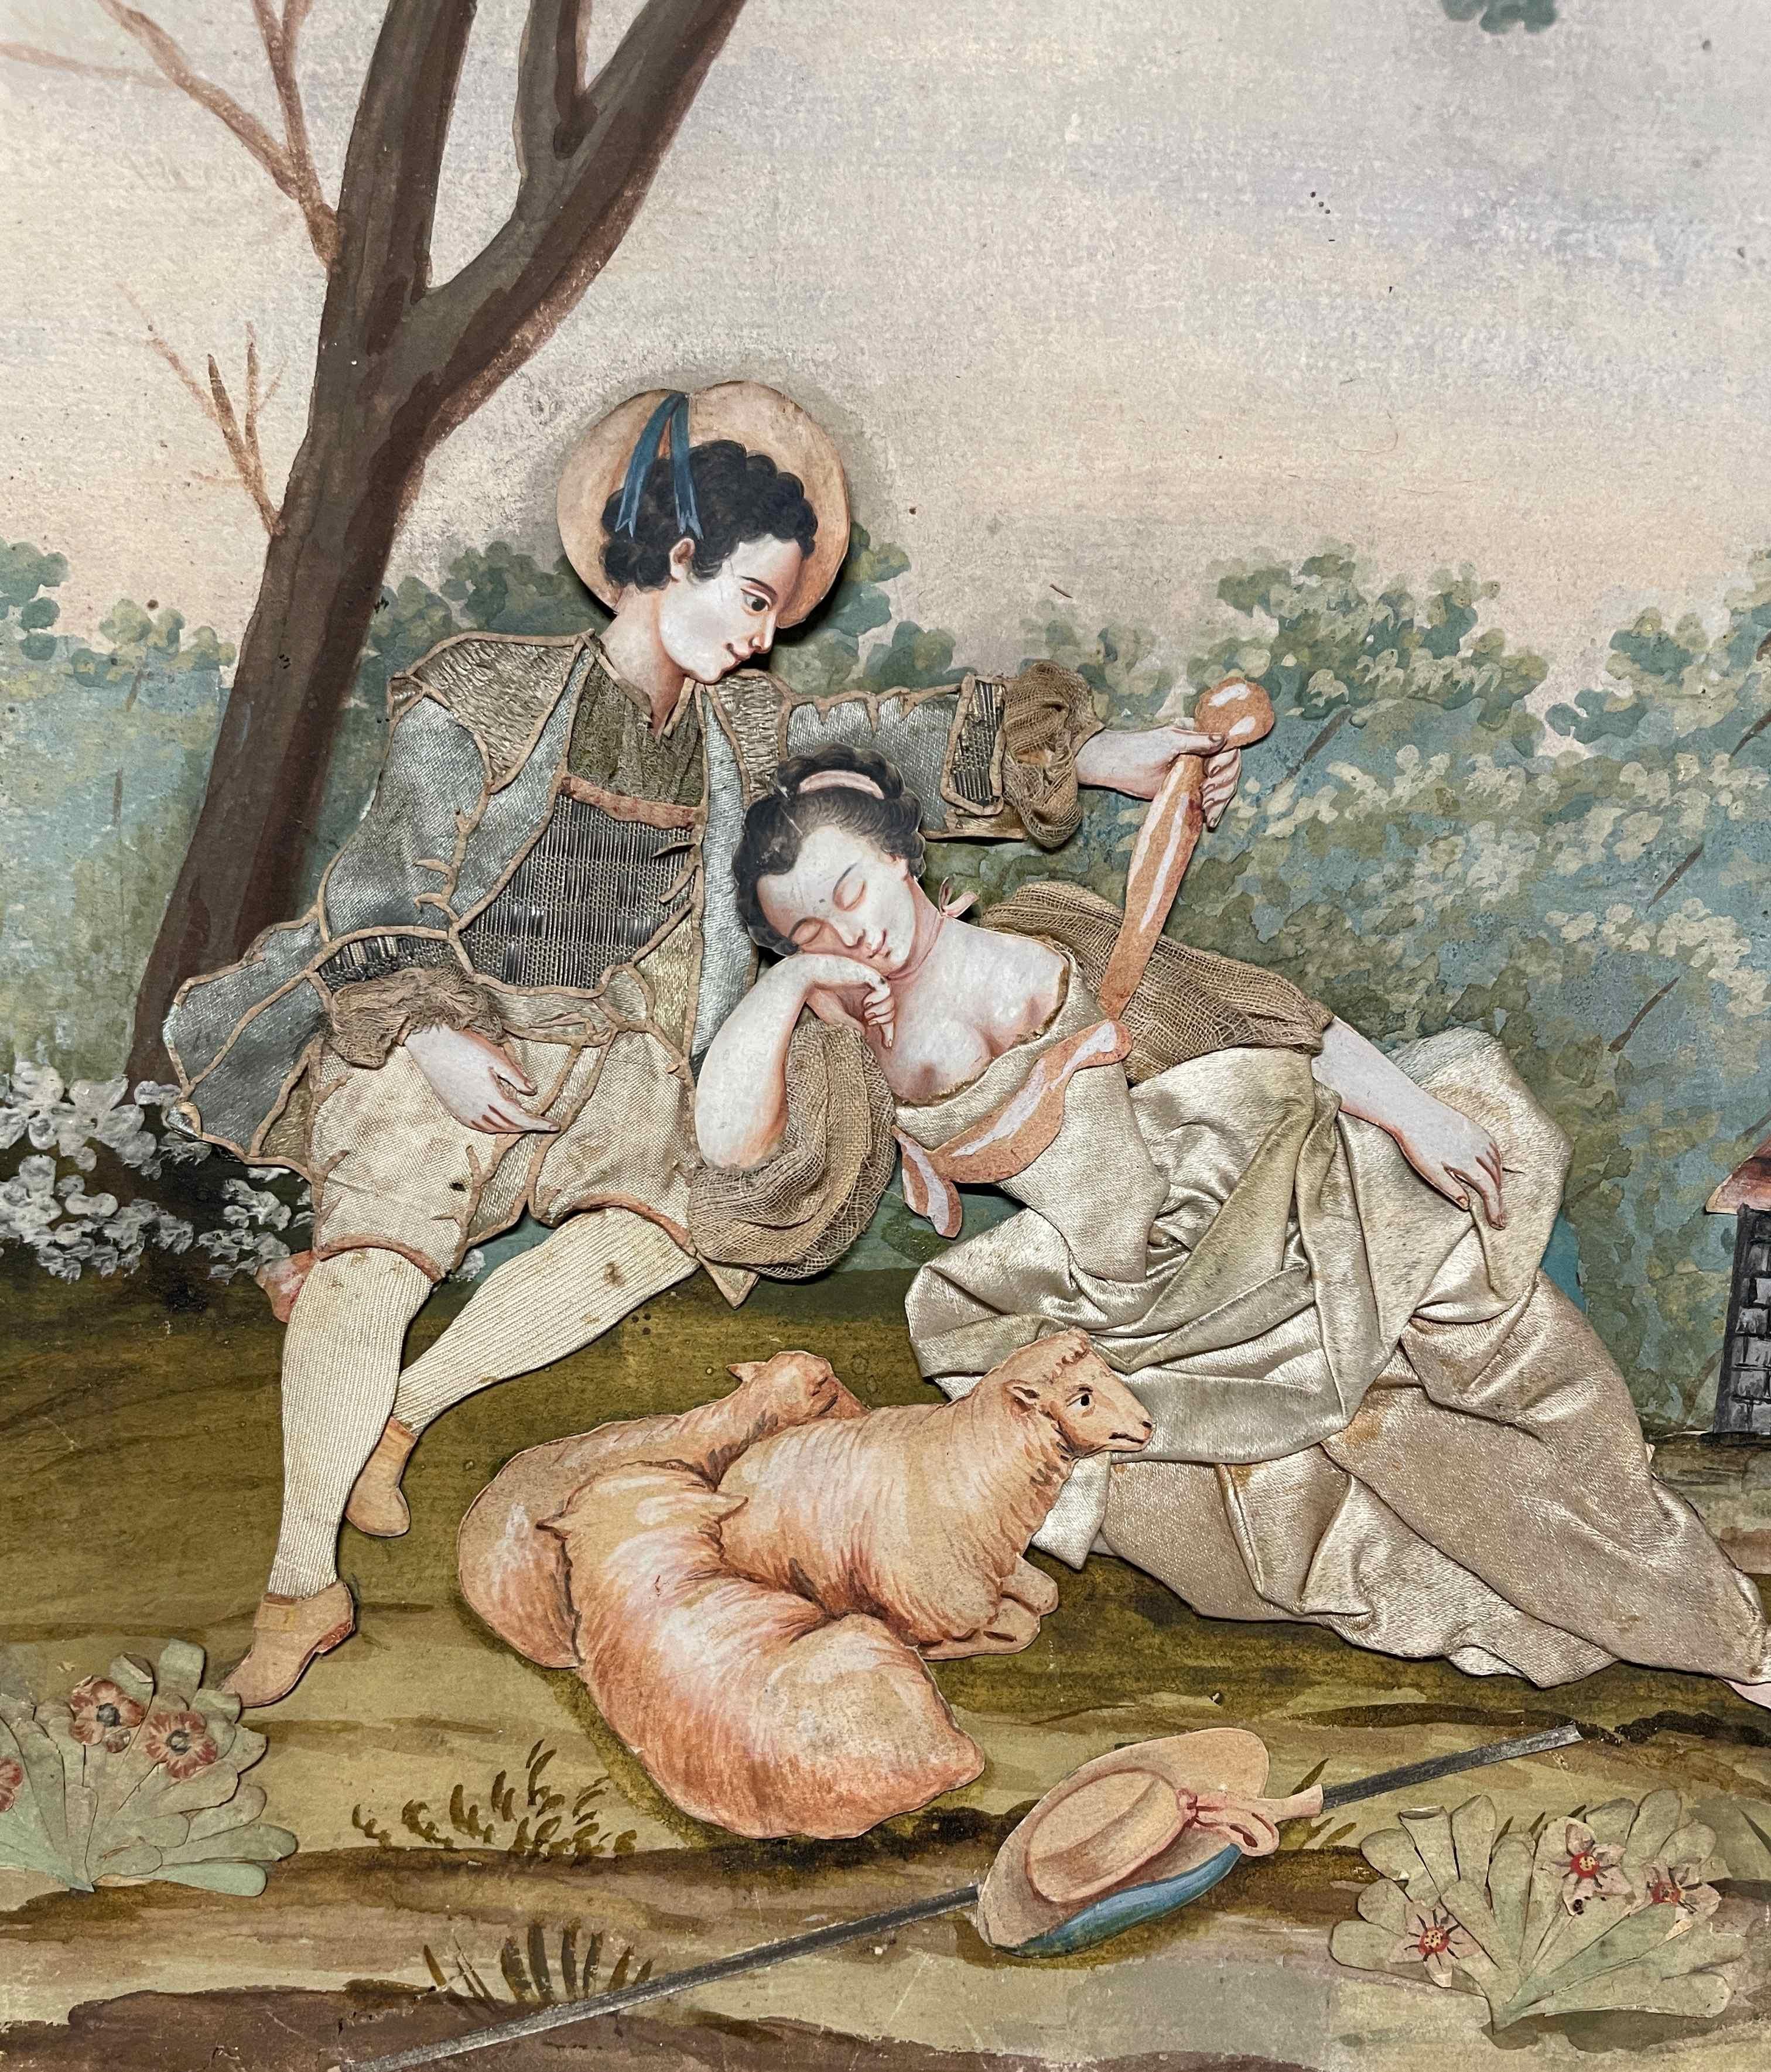 Eine schöne Collage aus Aquarell und Textilgewebe aus dem 19. Jahrhundert, die eine erotische Figurengruppe in einer pastoralen Landschaft zeigt.  Das Thema erinnert an Henry Fieldings humorvollen Roman 